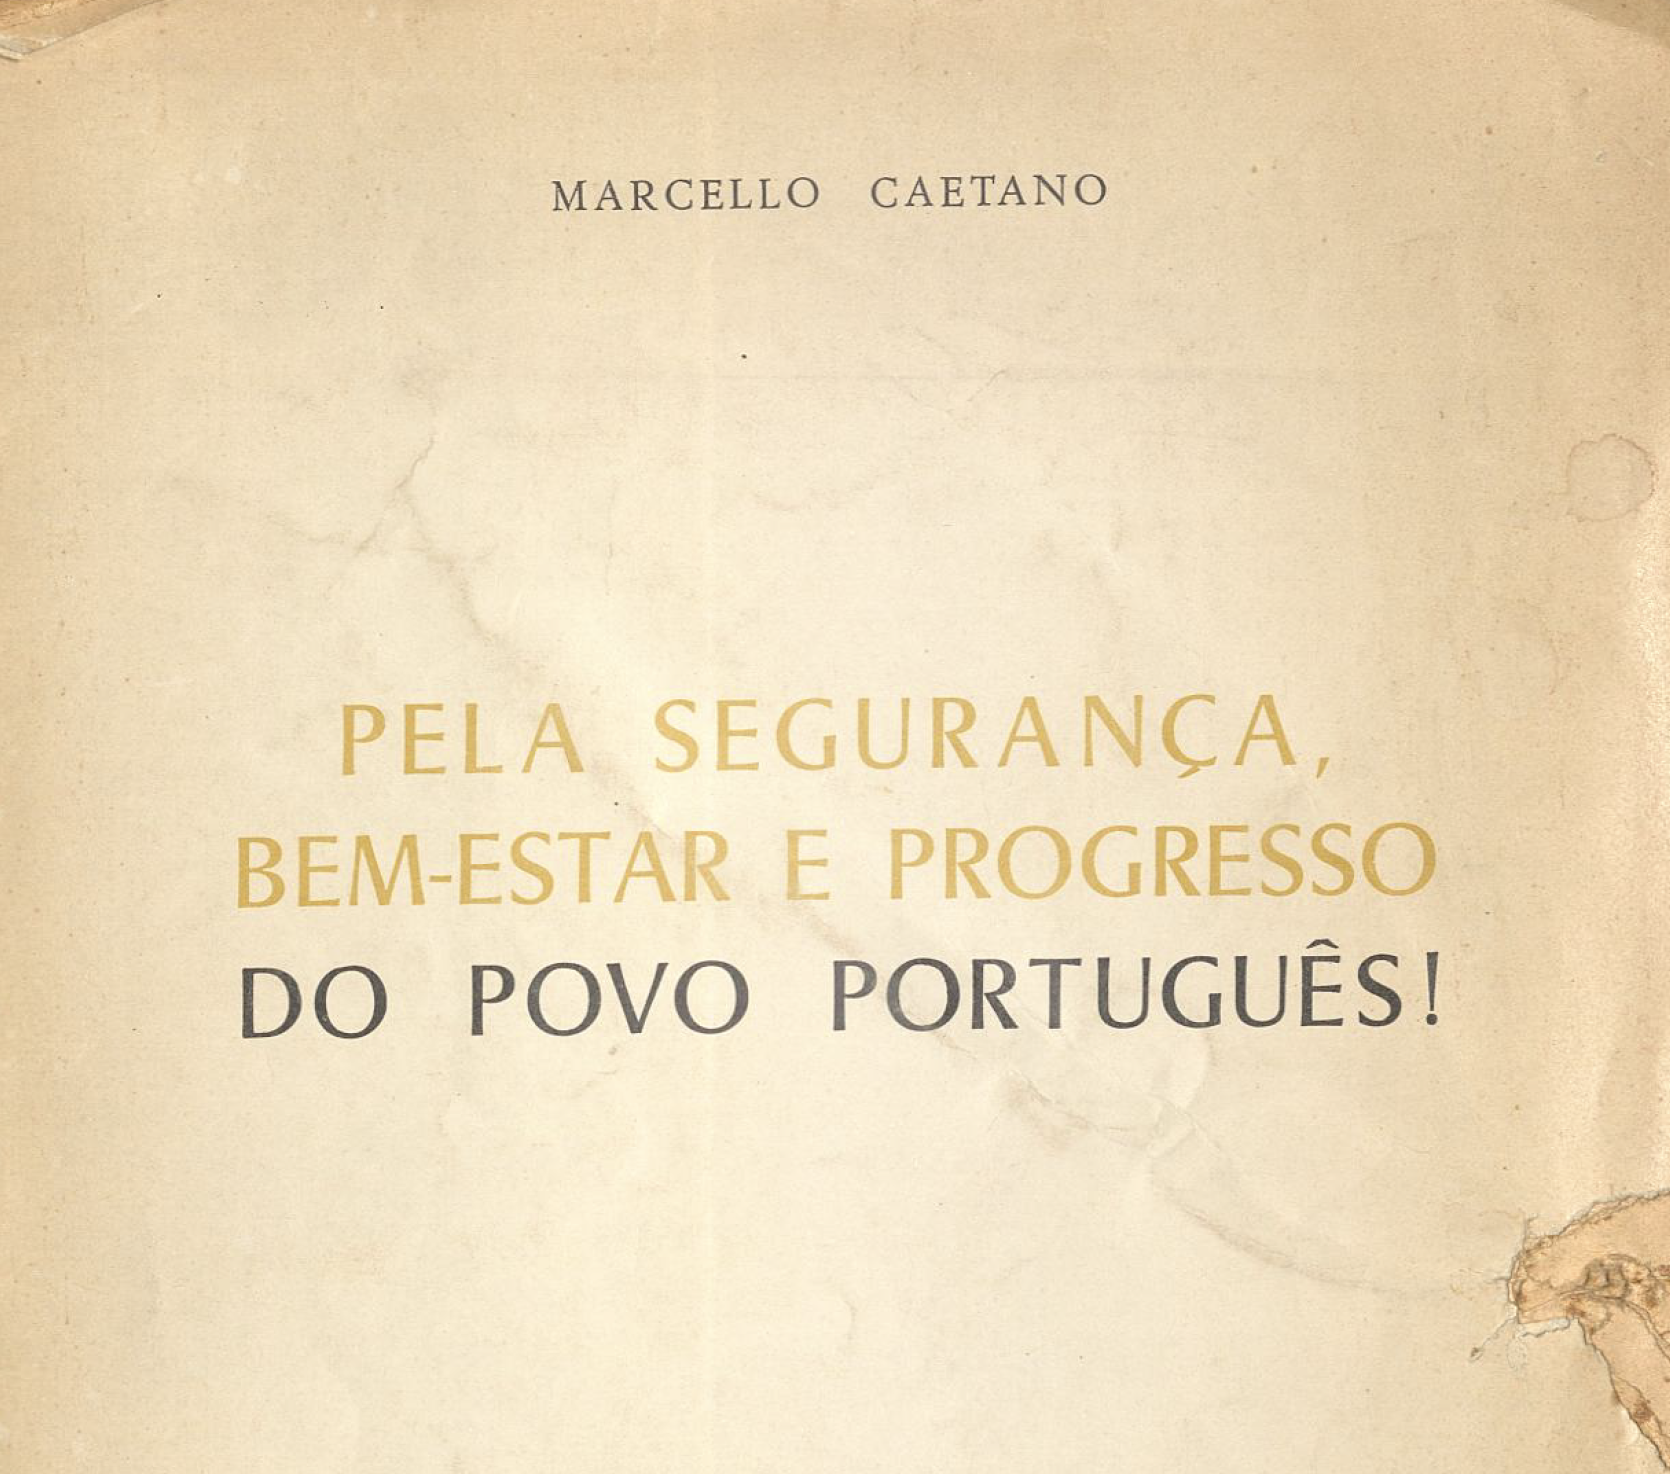 Pela segurança, bem-estar e progresso do povo português